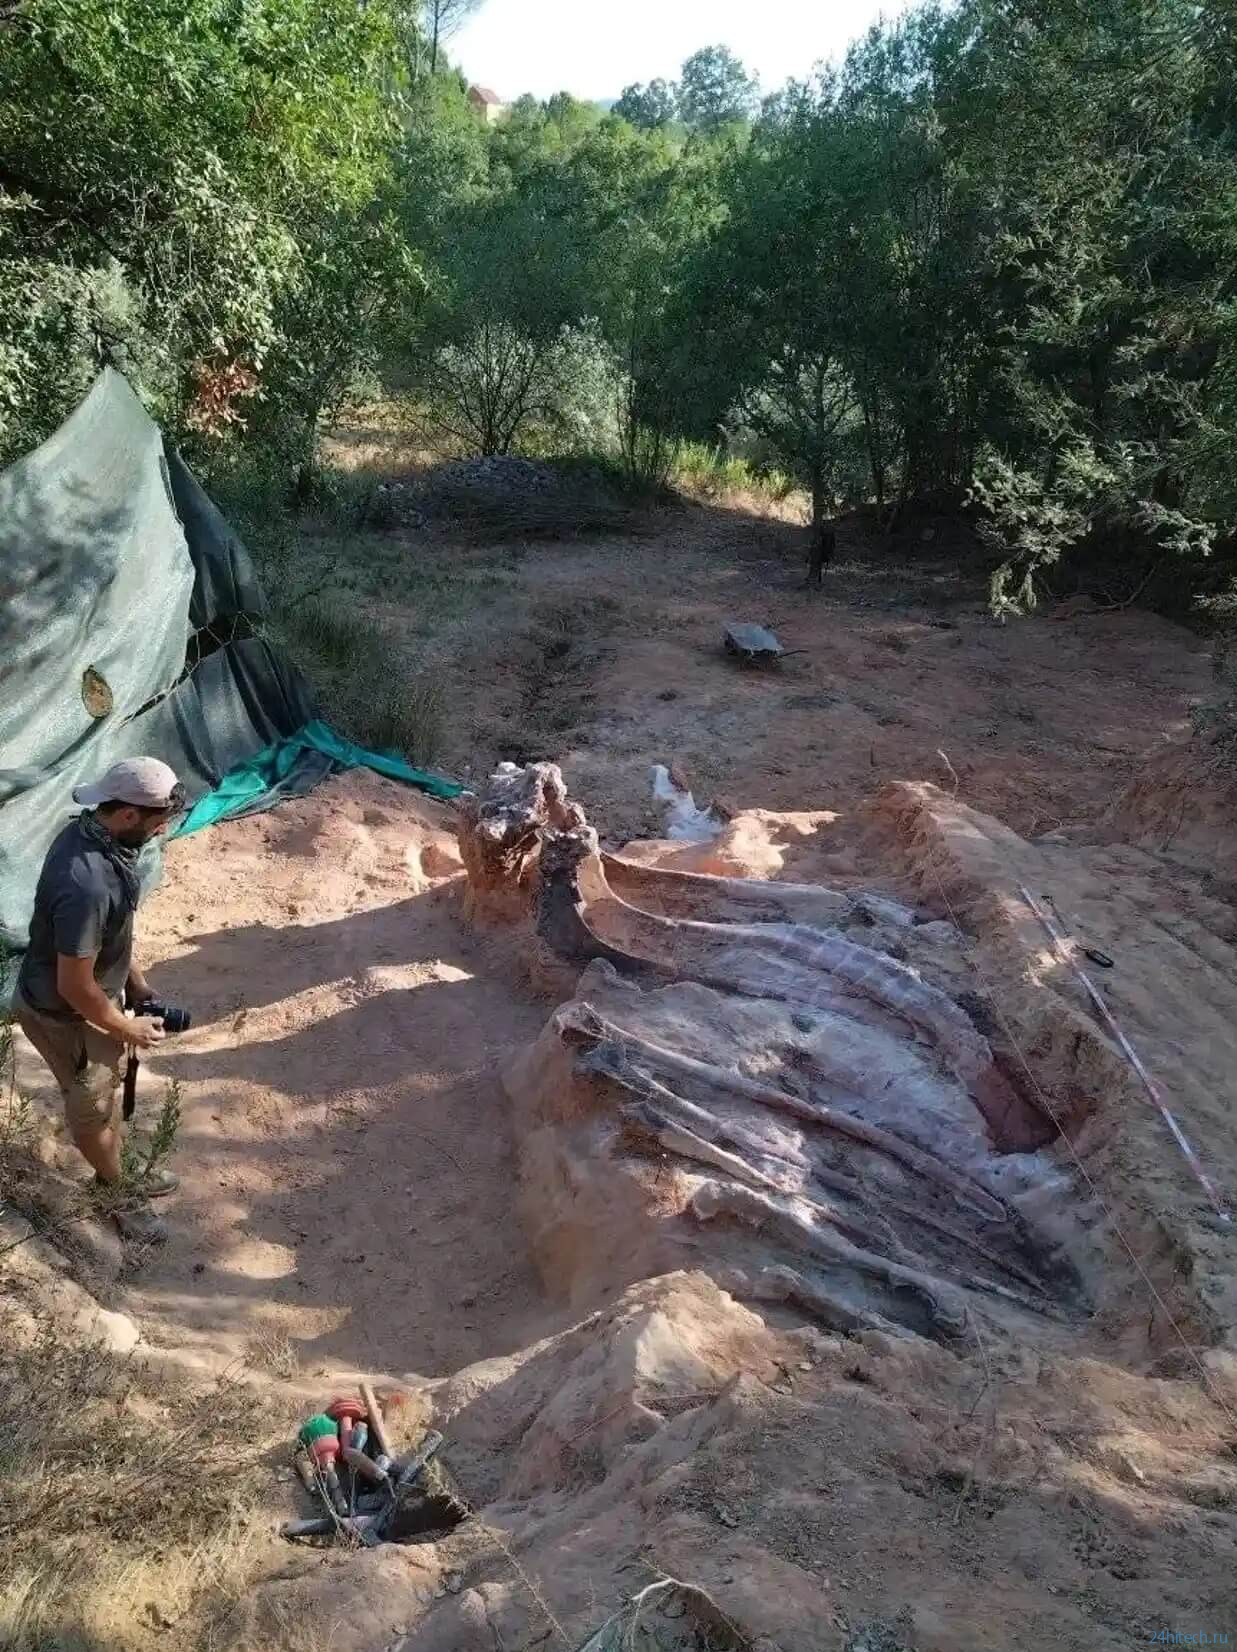 В Португалии найден скелет динозавра ростом с высотное здание